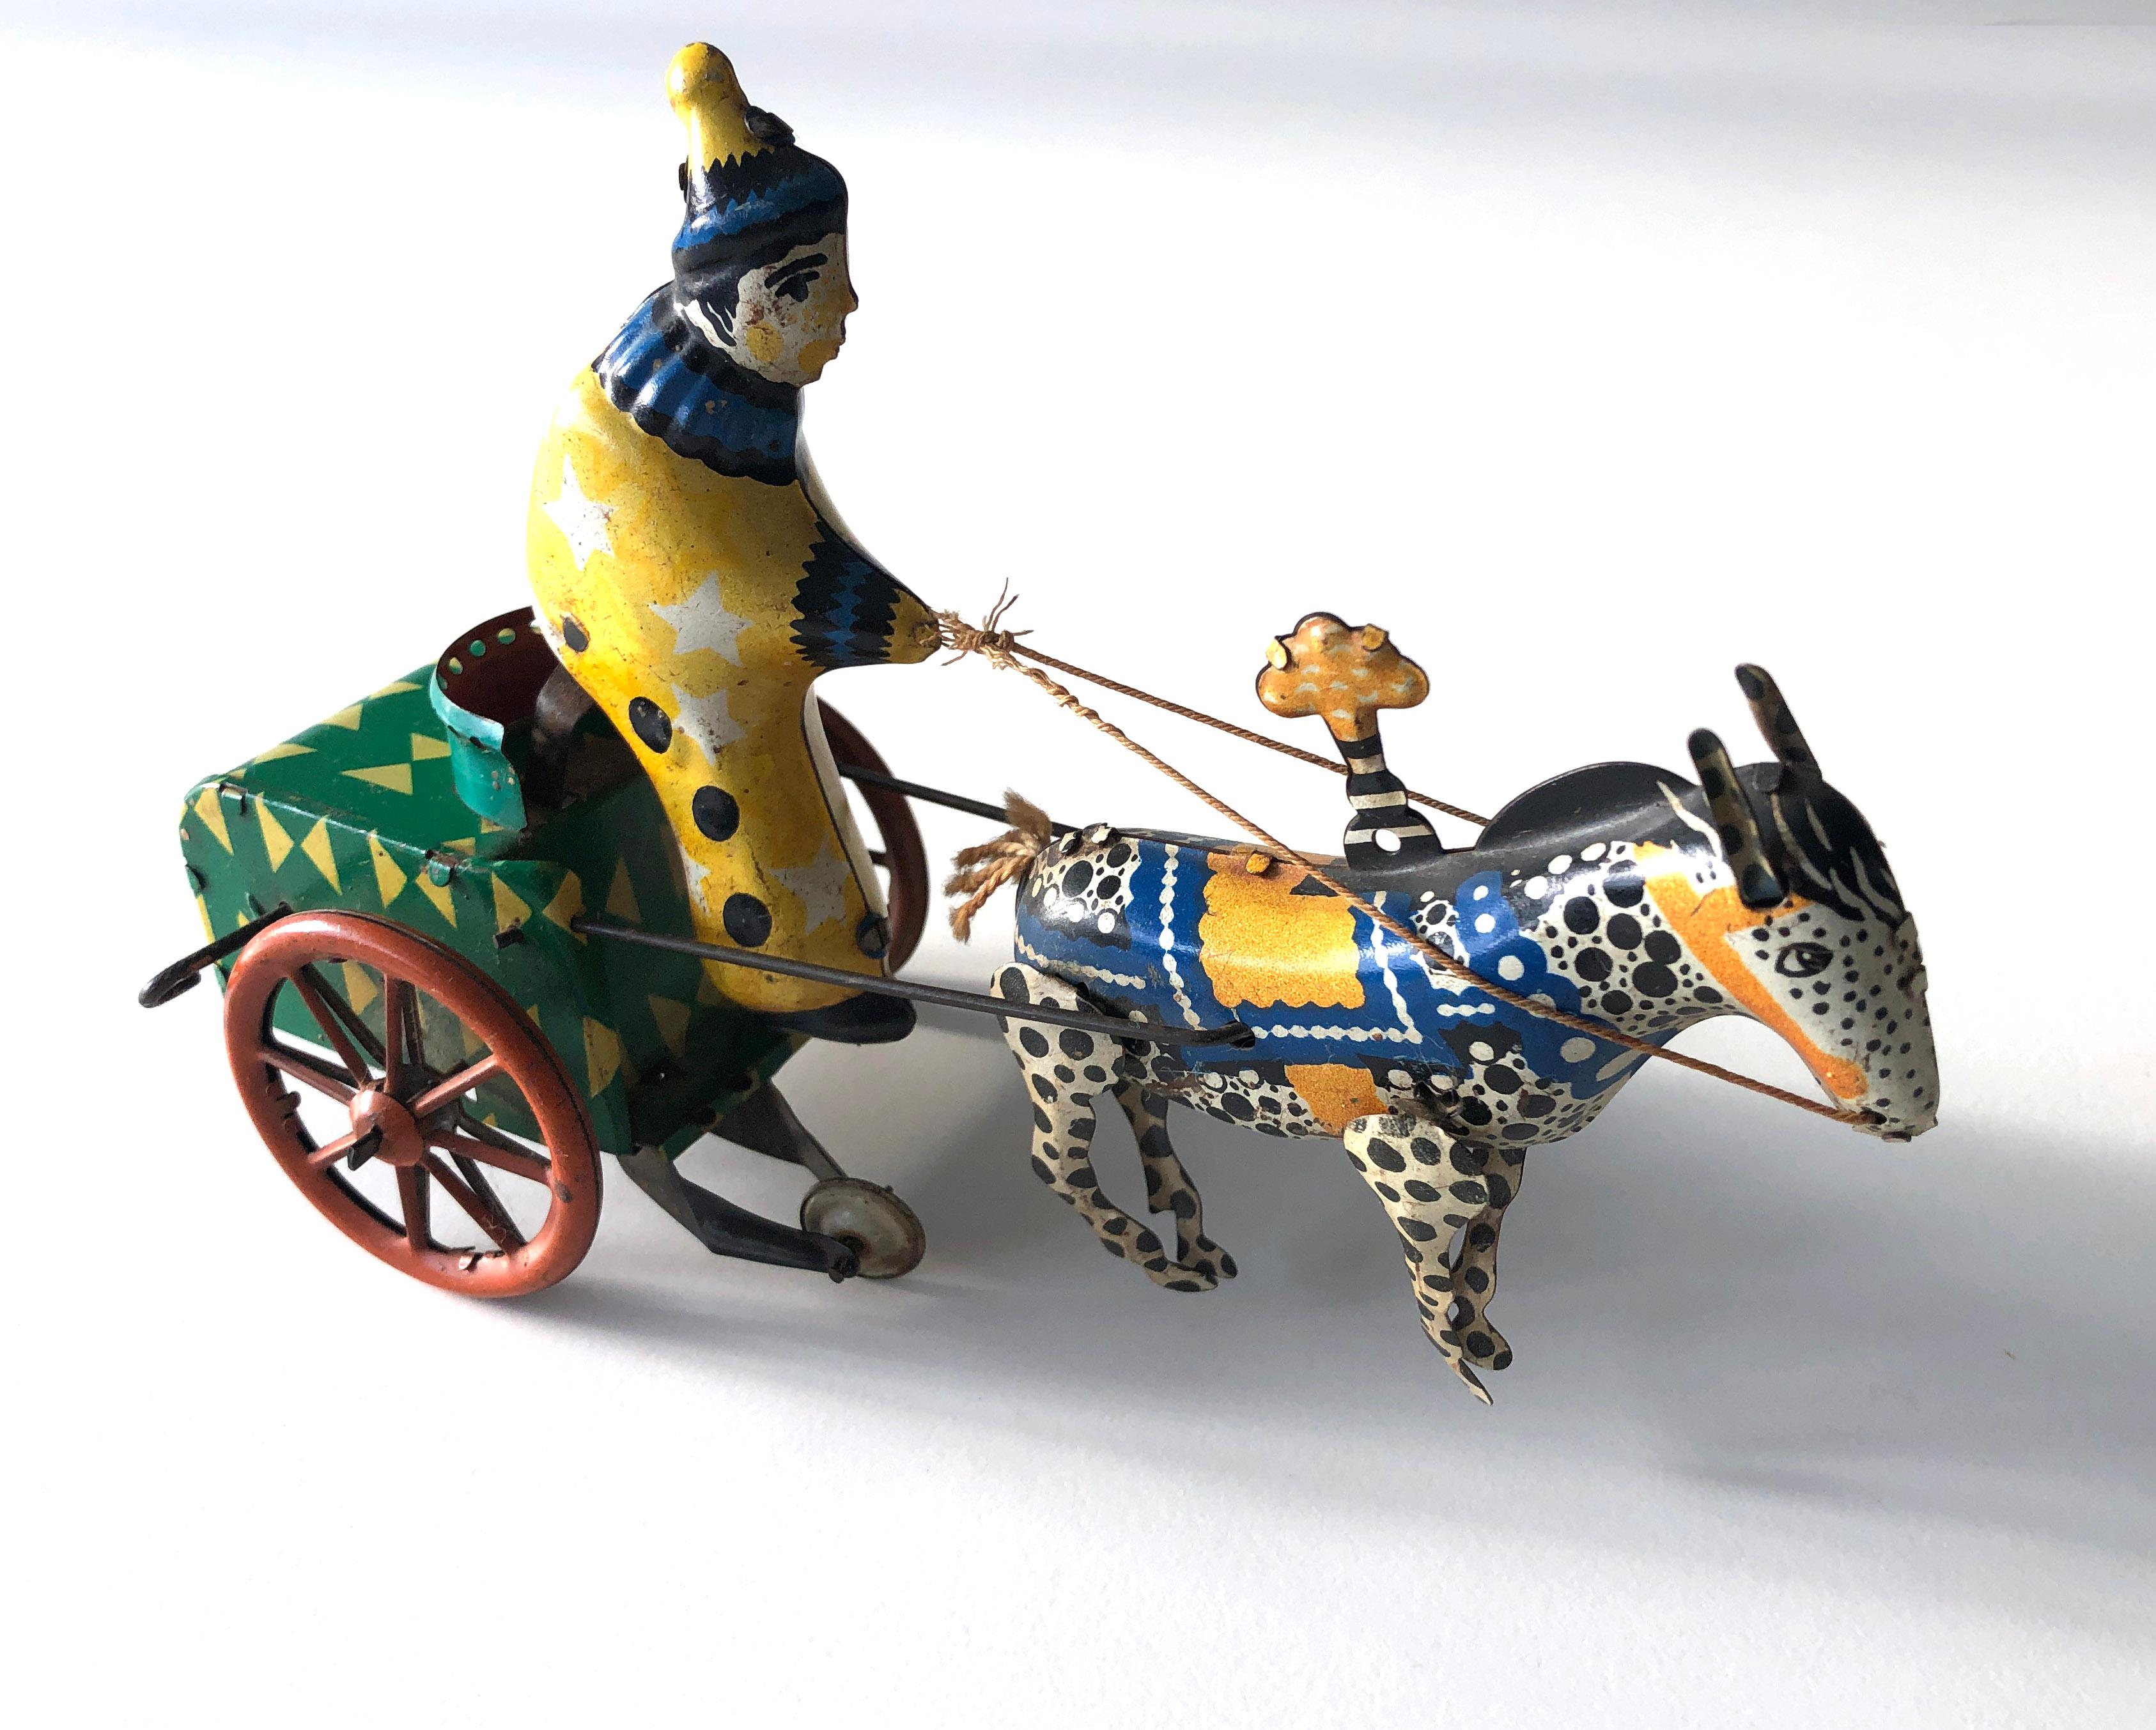 Vintage 1950's USSR Tin Windup Circus Donkey Carriage with clown.
Le mécanisme est intact mais ne fonctionne pas. Simple à restaurer.

Longueur approximative : 18 cm
Largeur approximative : 9,5 cm
Hauteur approximative : 13,5 cm

Le véhicule est un